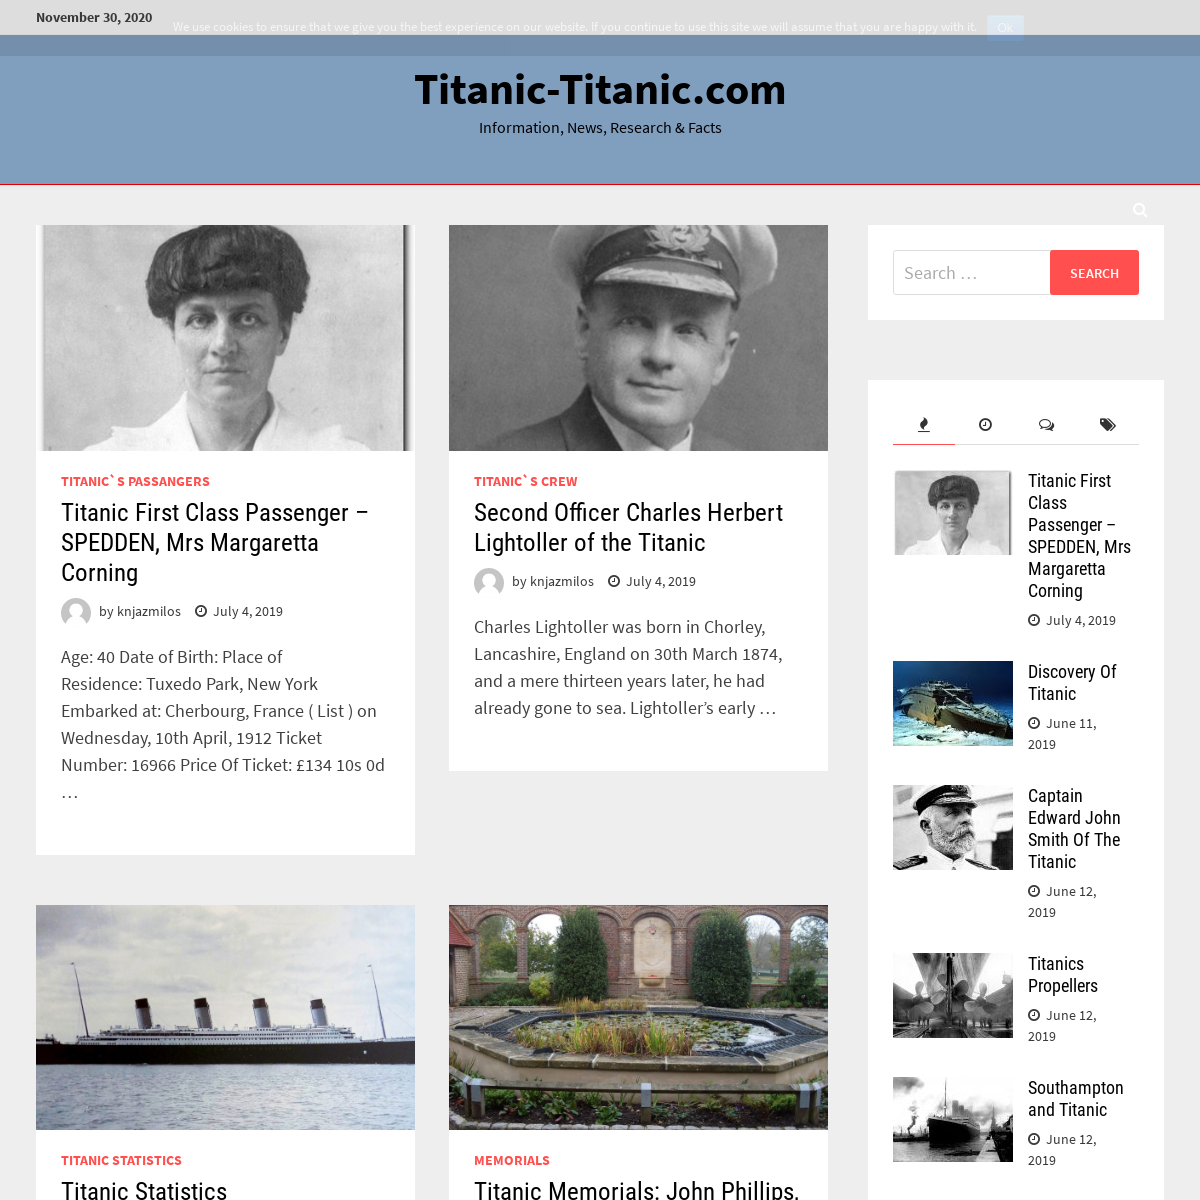 A complete backup of titanic-titanic.com